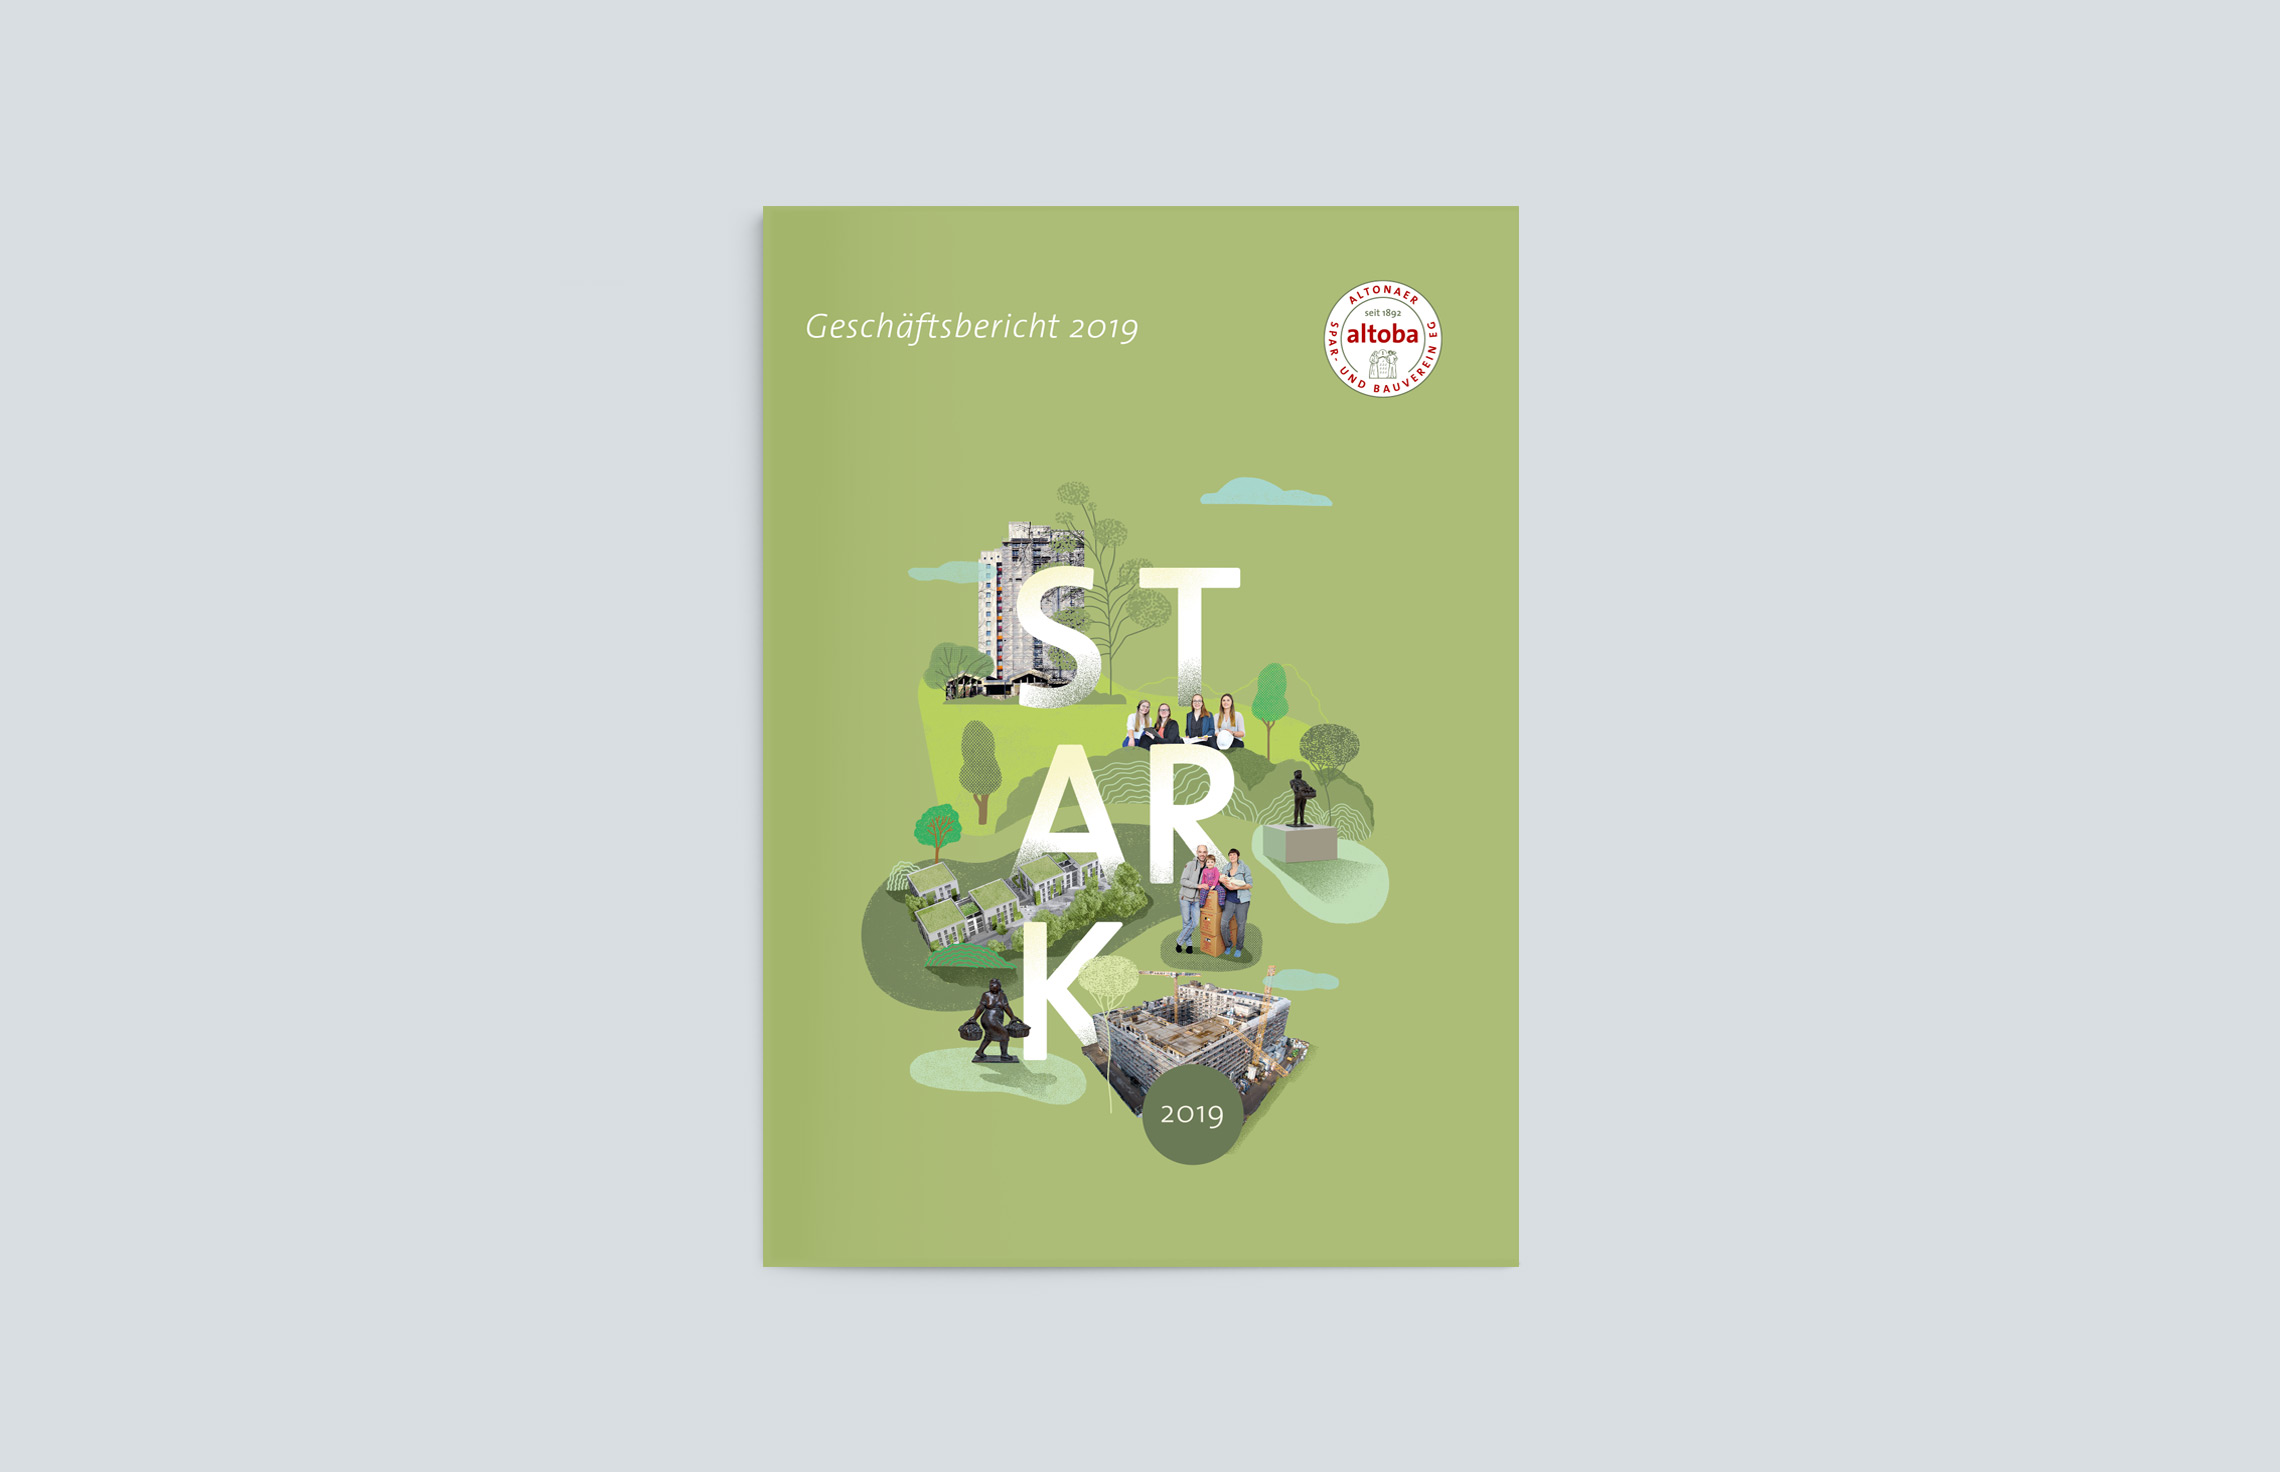 Annual Report Design, Geschäftsberichte,  Geschäftsbericht 2019 der altoba, Hamburg; Cover mit Titelillustration